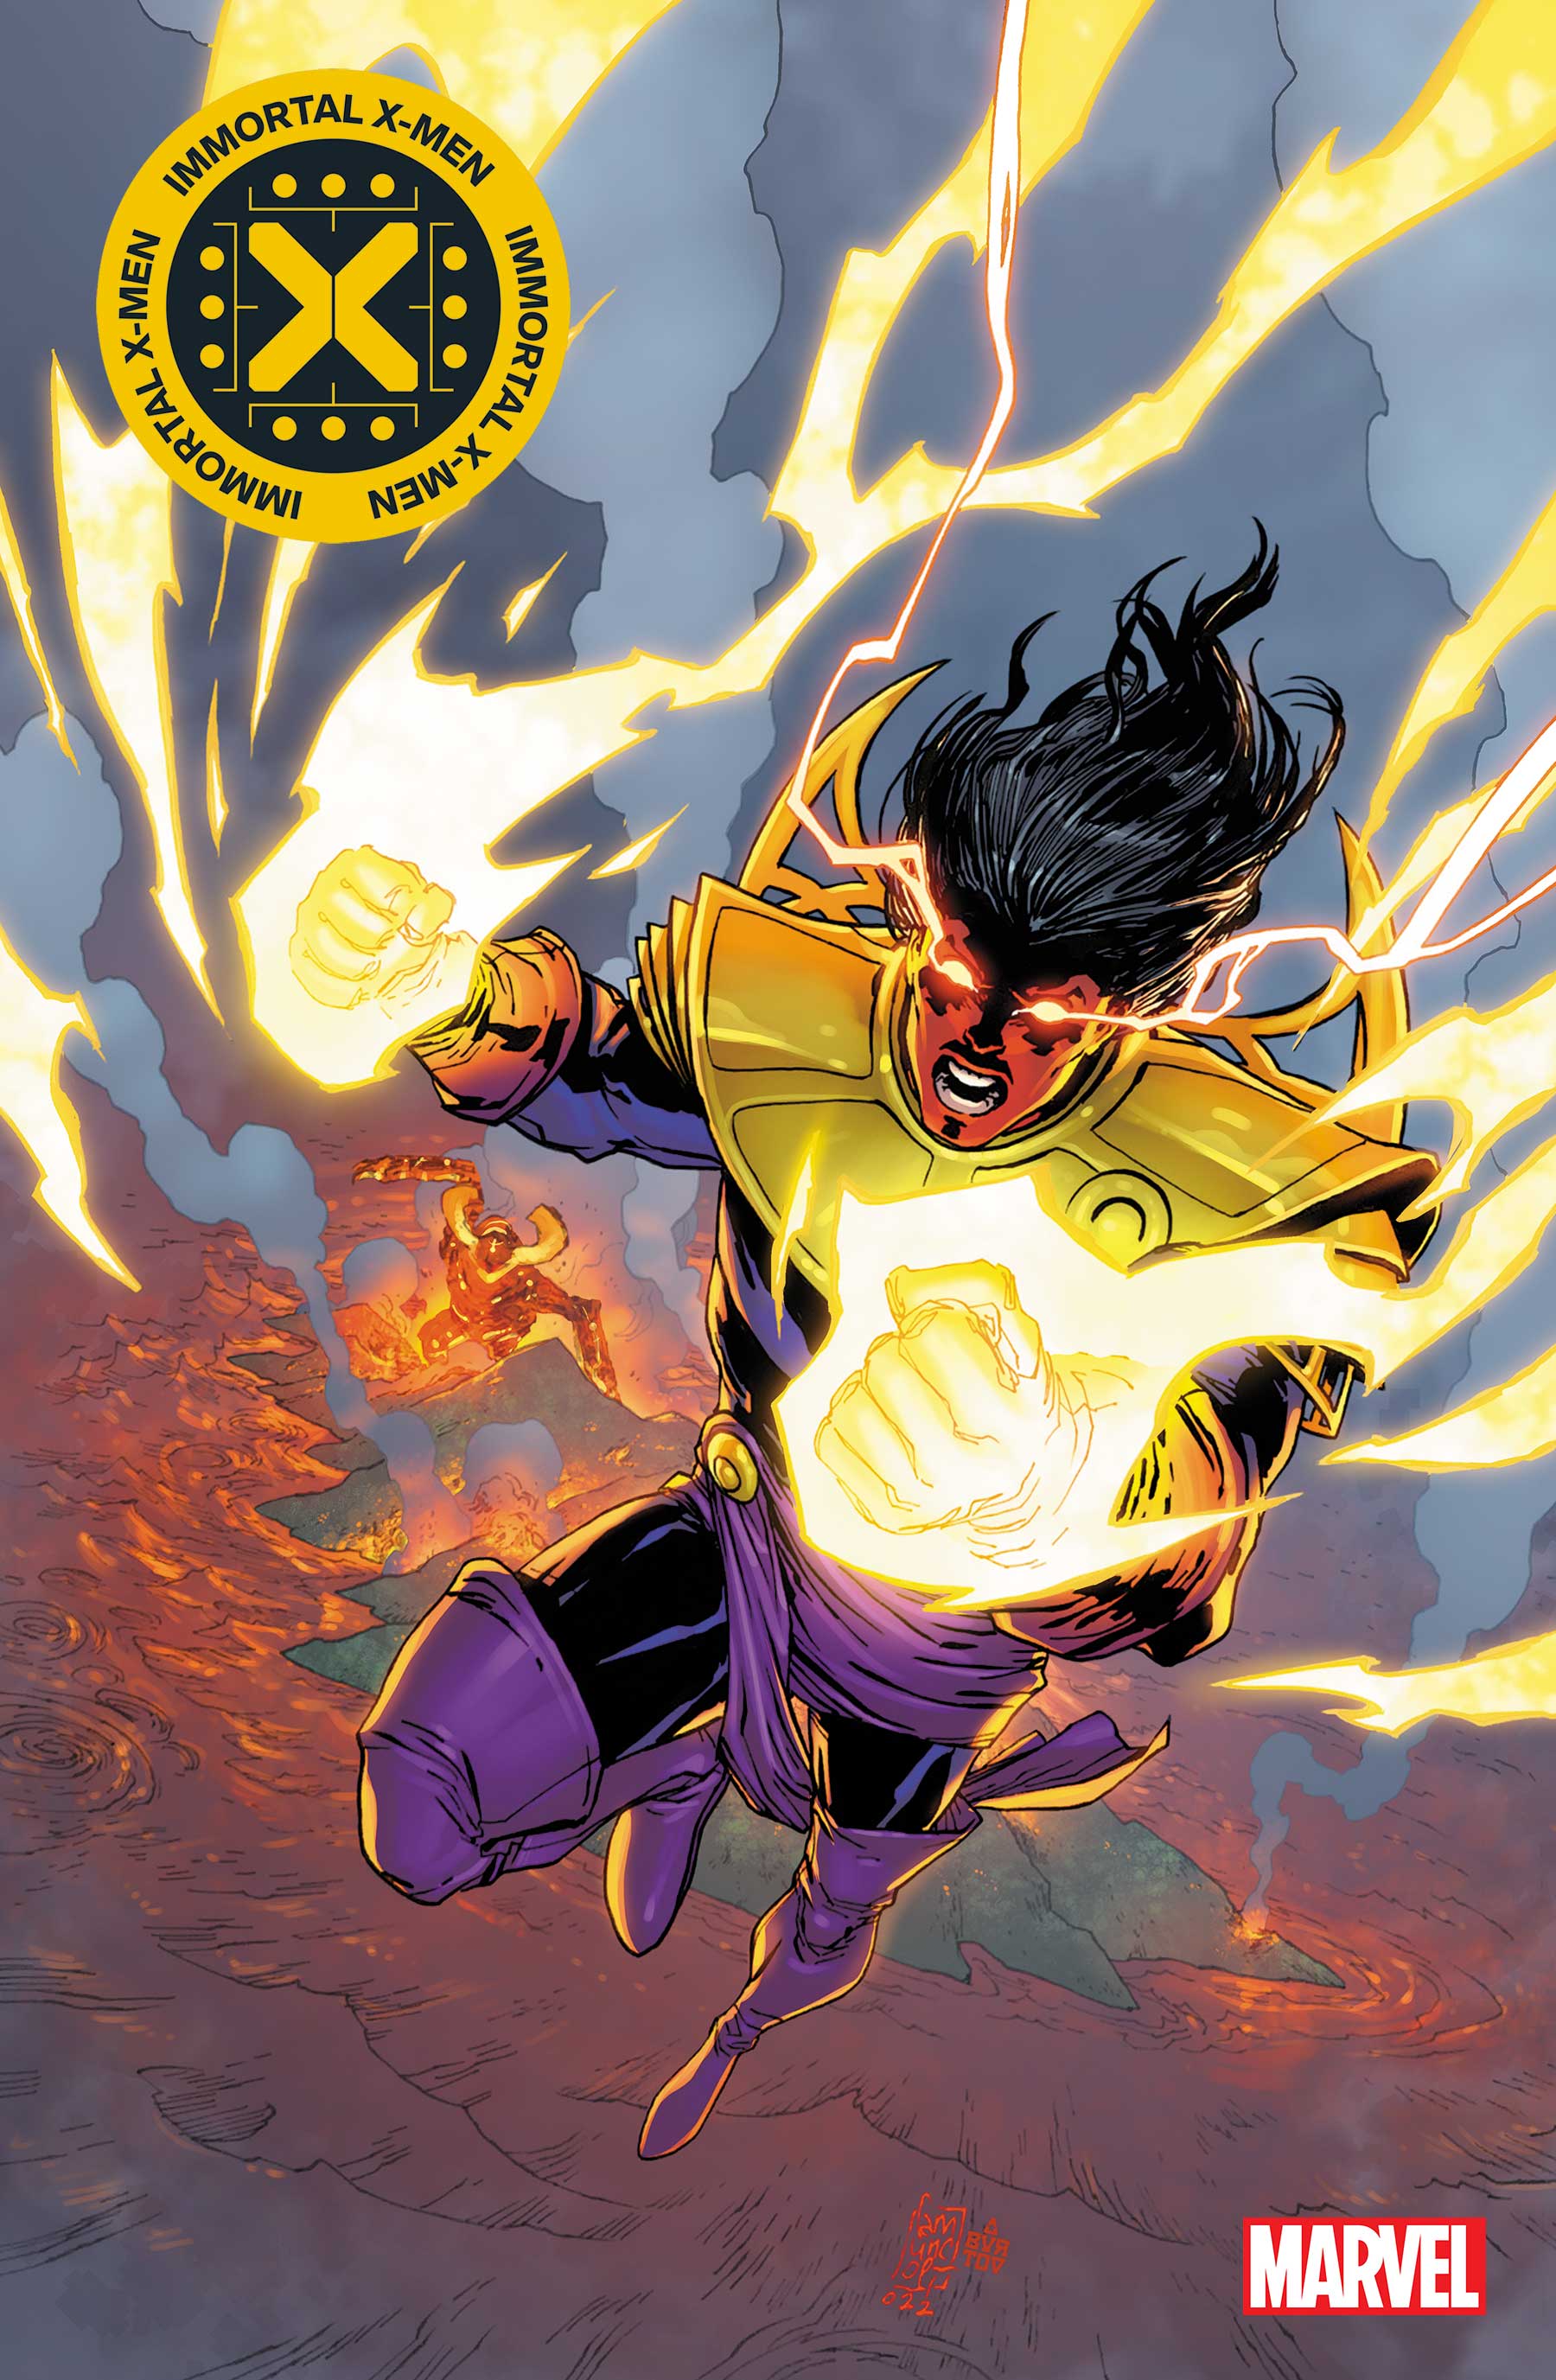 Immortal X-Men (2022) #5